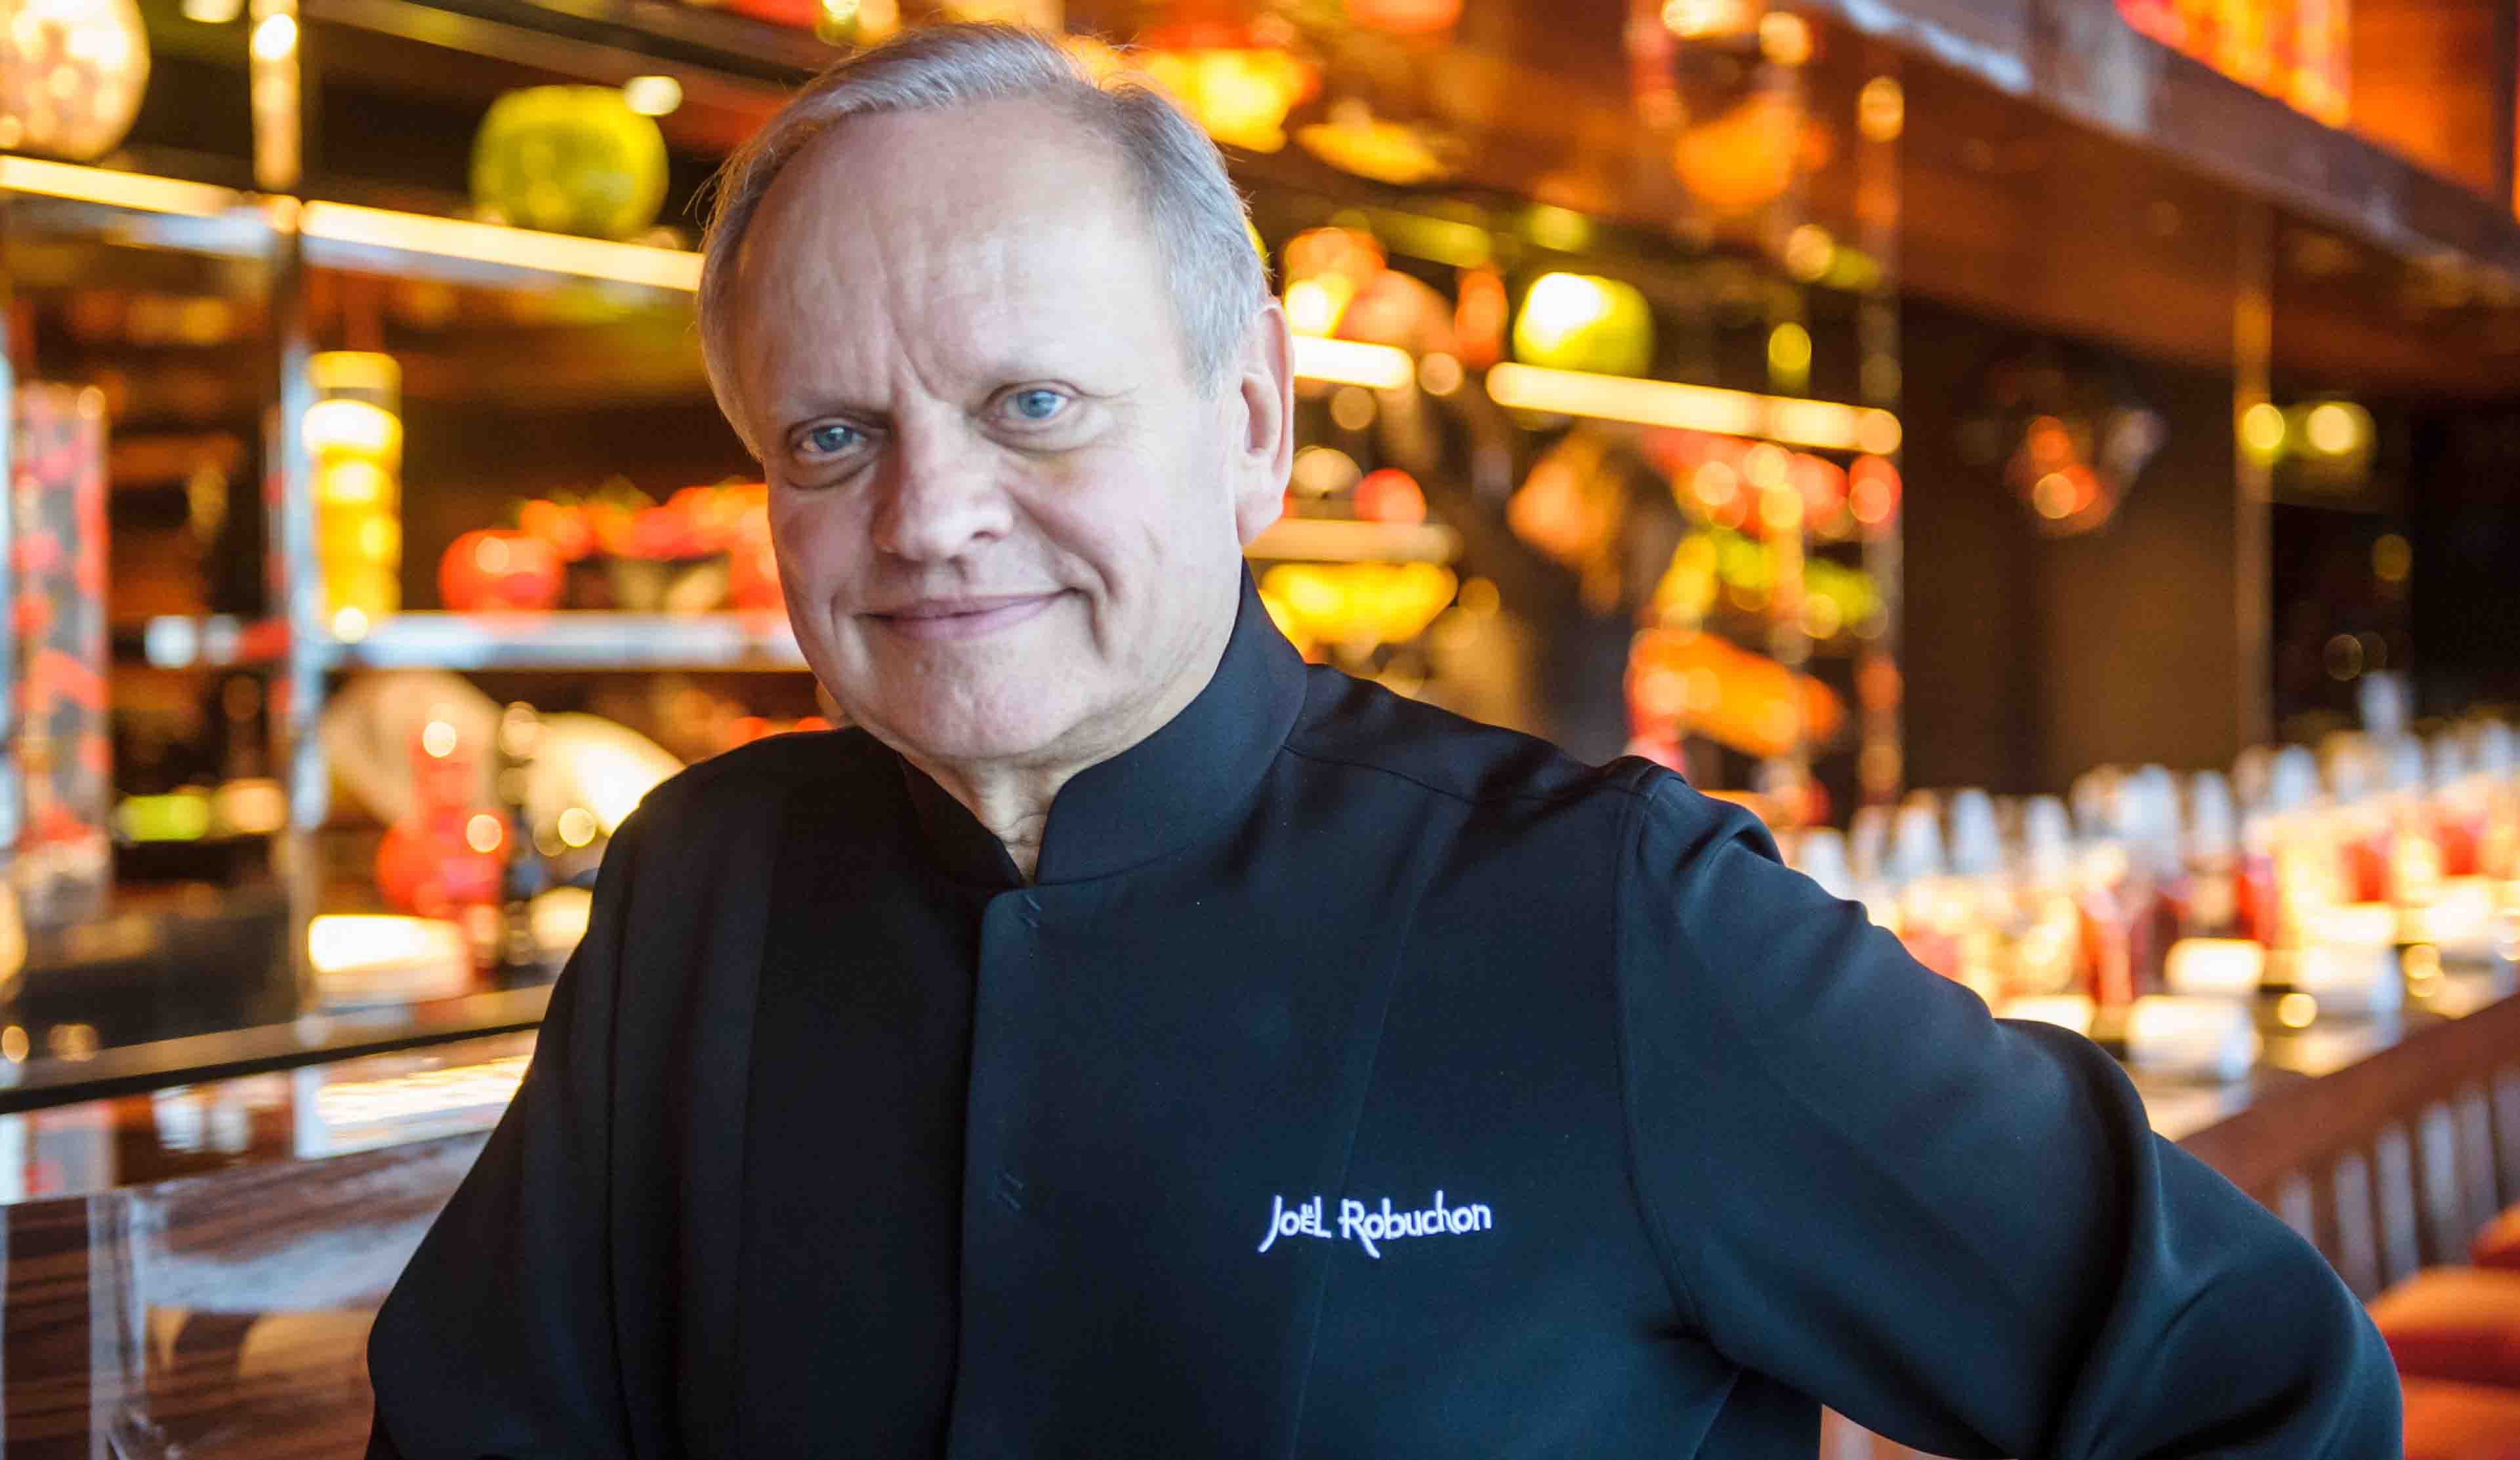 El Sumario - El cocinero francés es el ganador de más estrellas Michelin, precursor de la "nouvelle cuisine" y fundador de locales en Estados Unidos, Londres y Asia